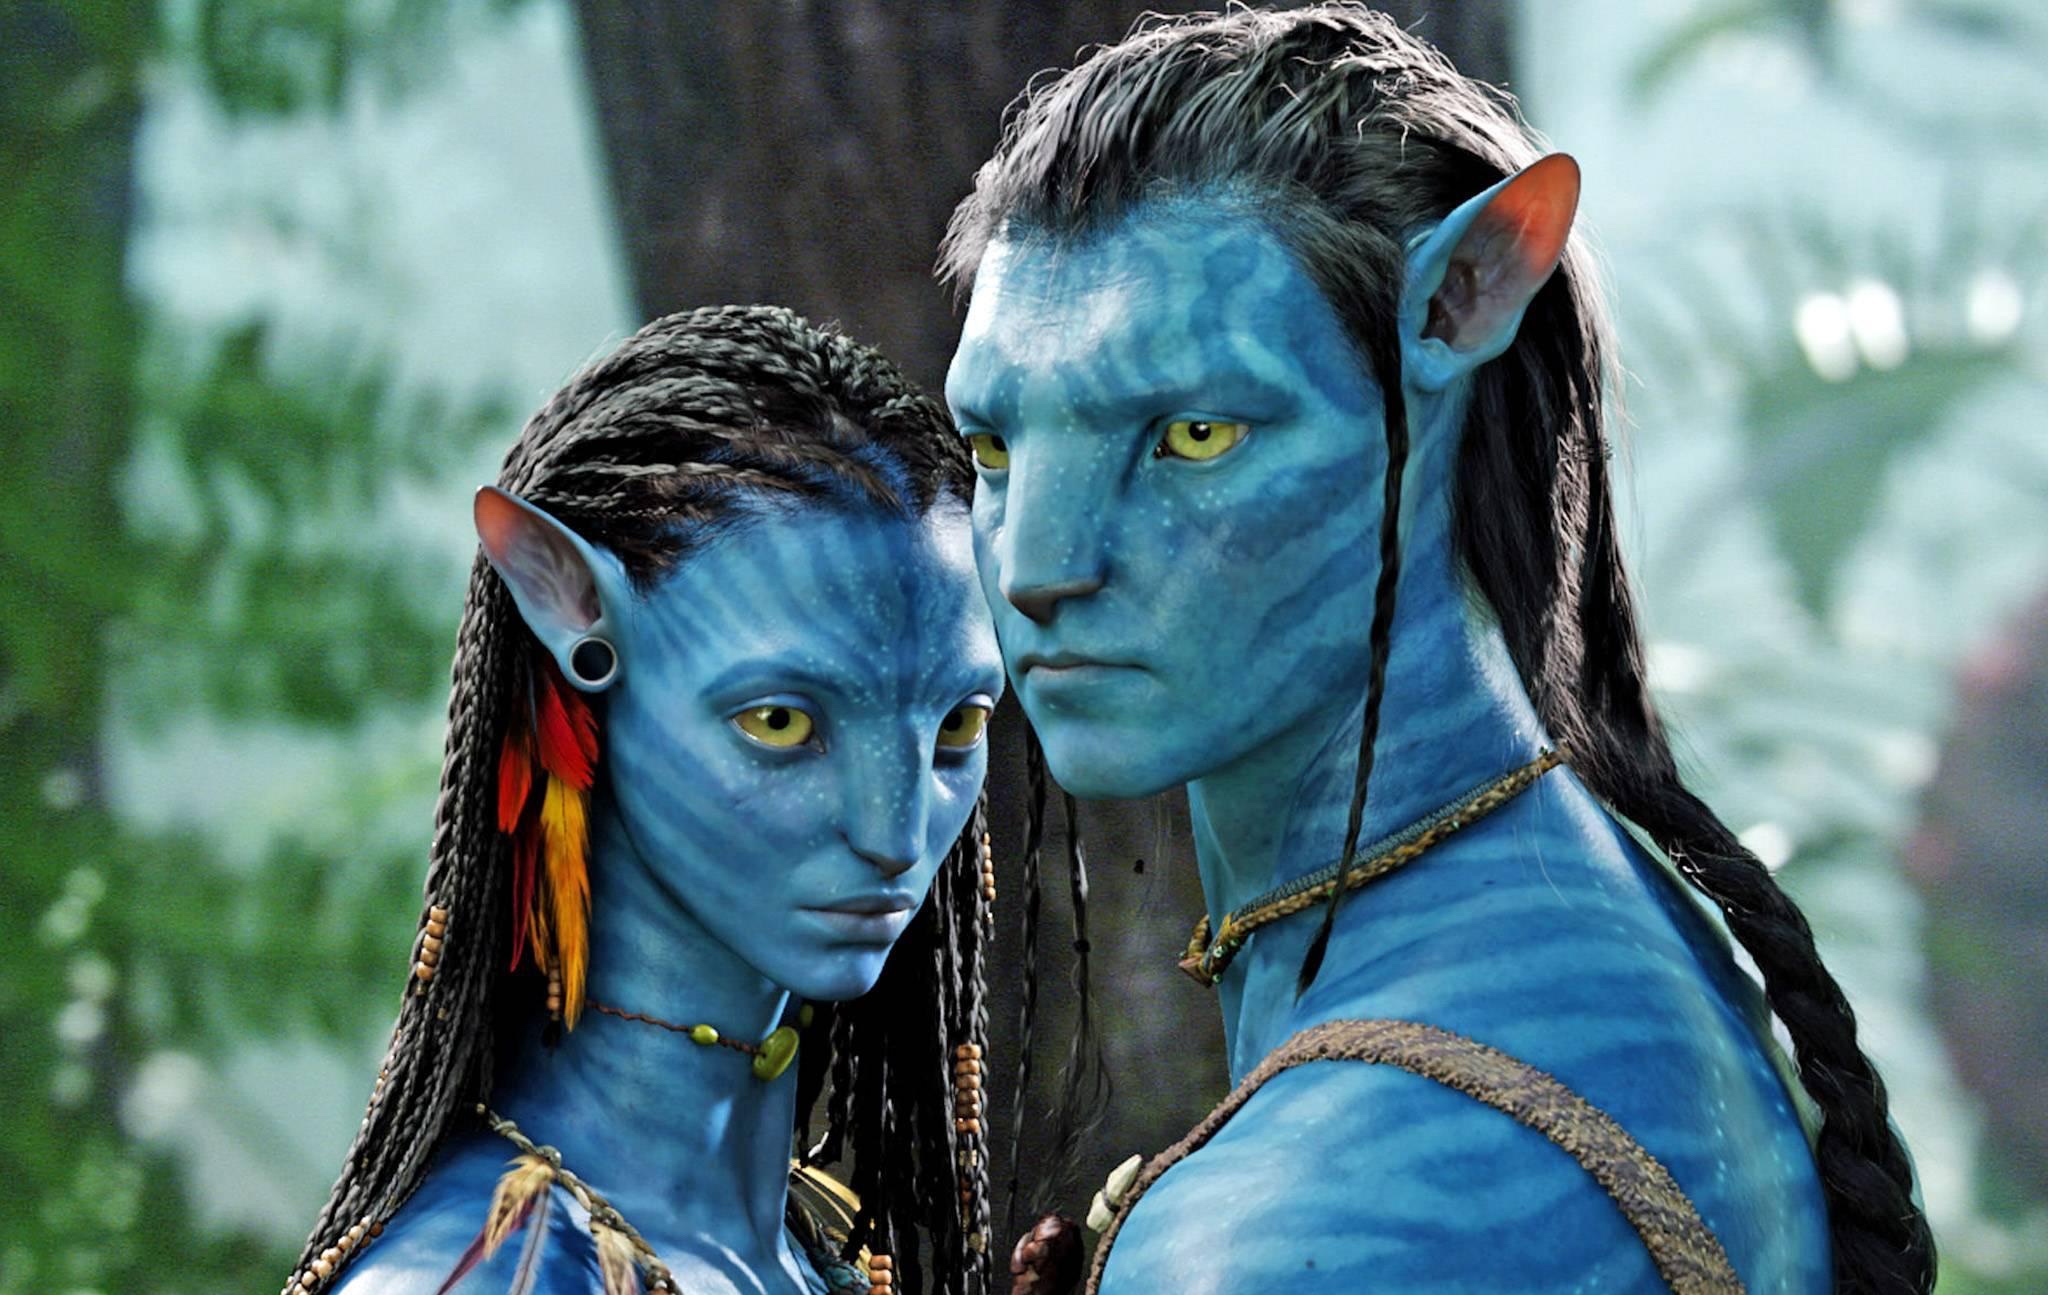 Las 8 claves para entender el universo “Avatar”